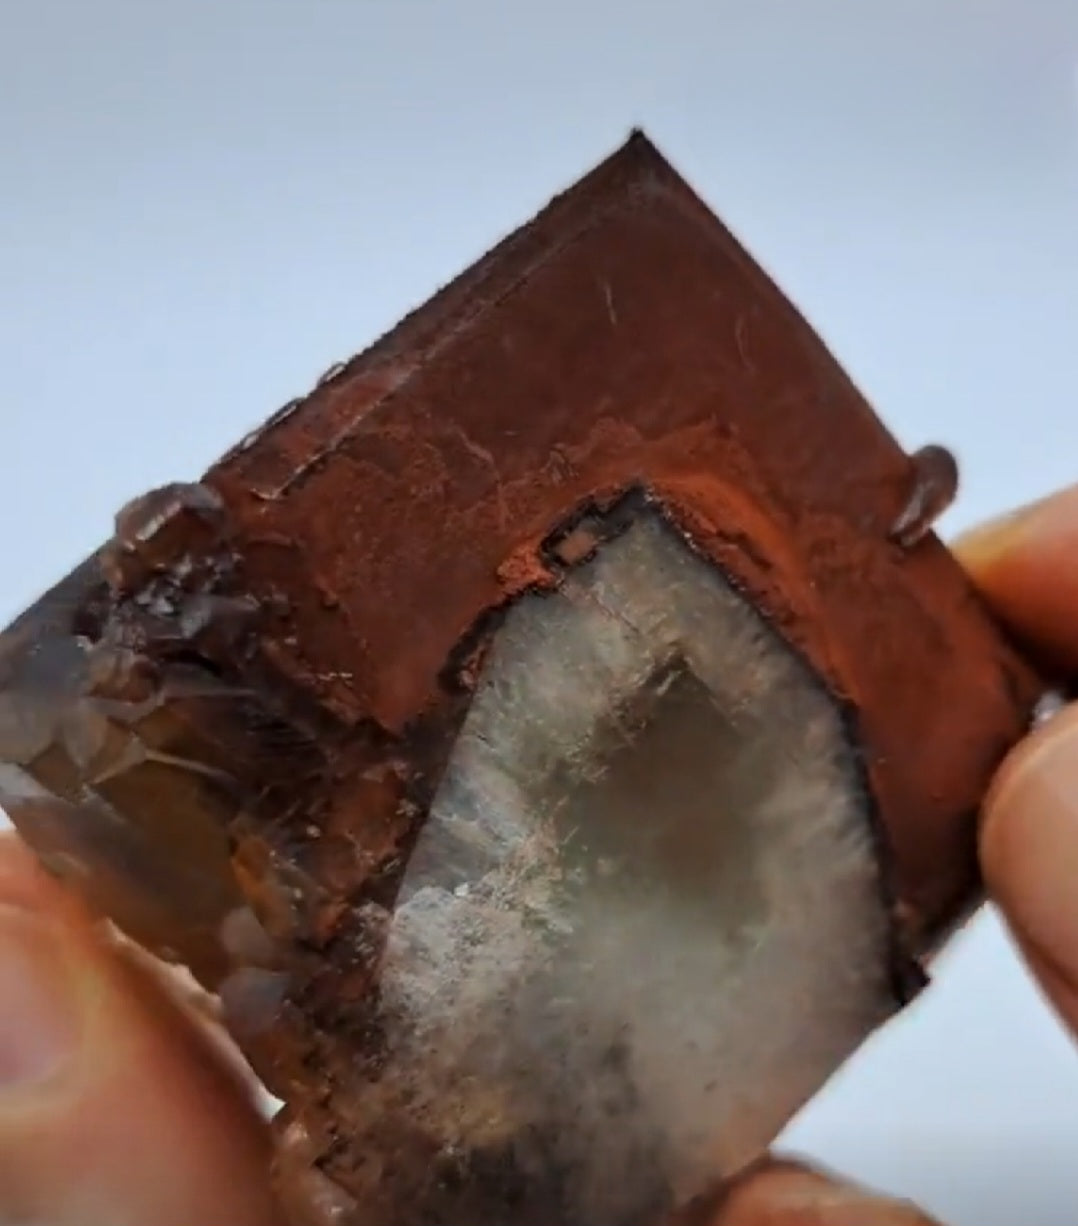 Rare Chocolate Calcite. Yum!